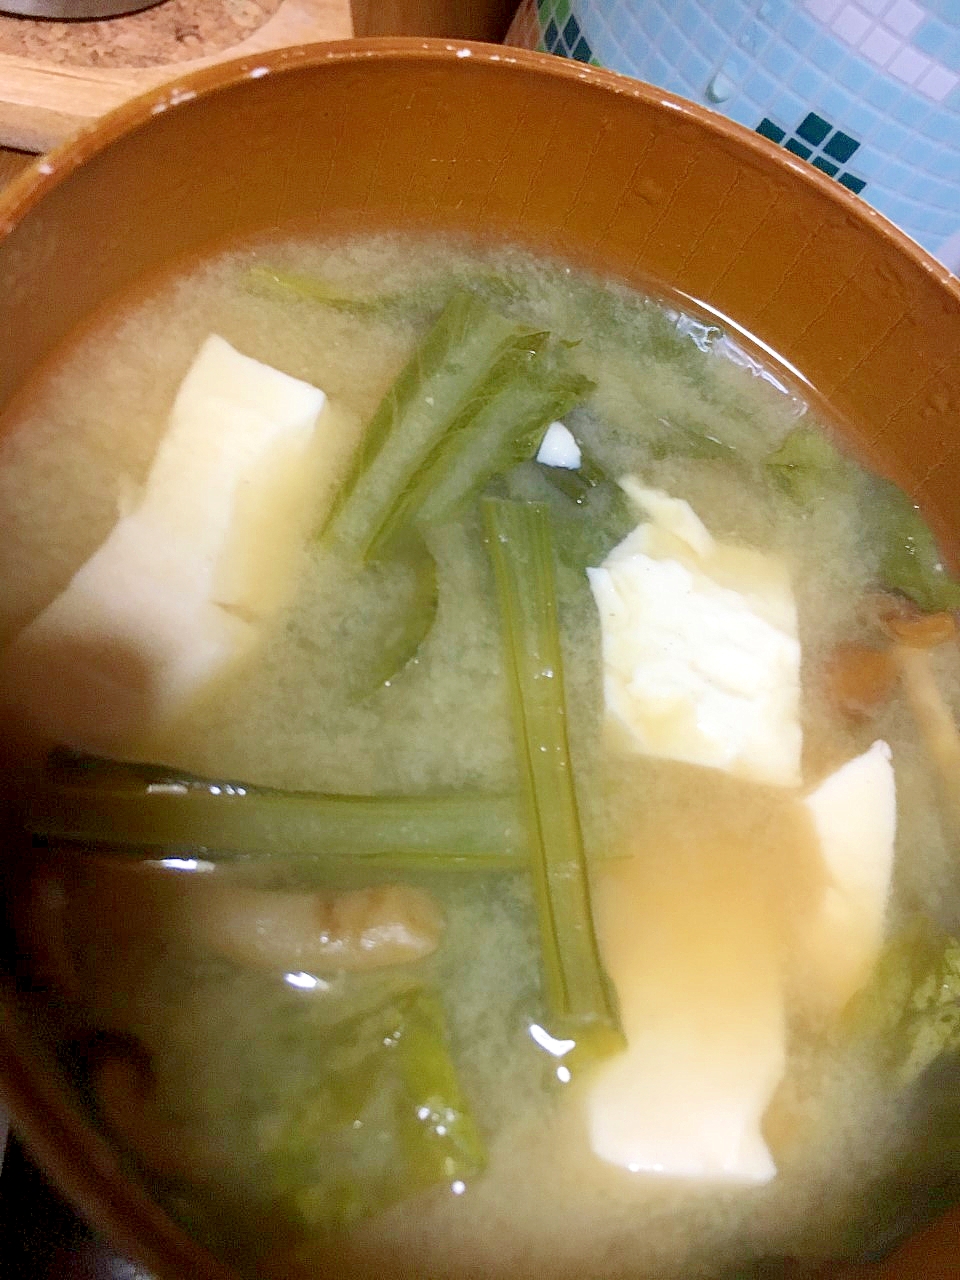 小松菜となめこと豆腐の味噌汁